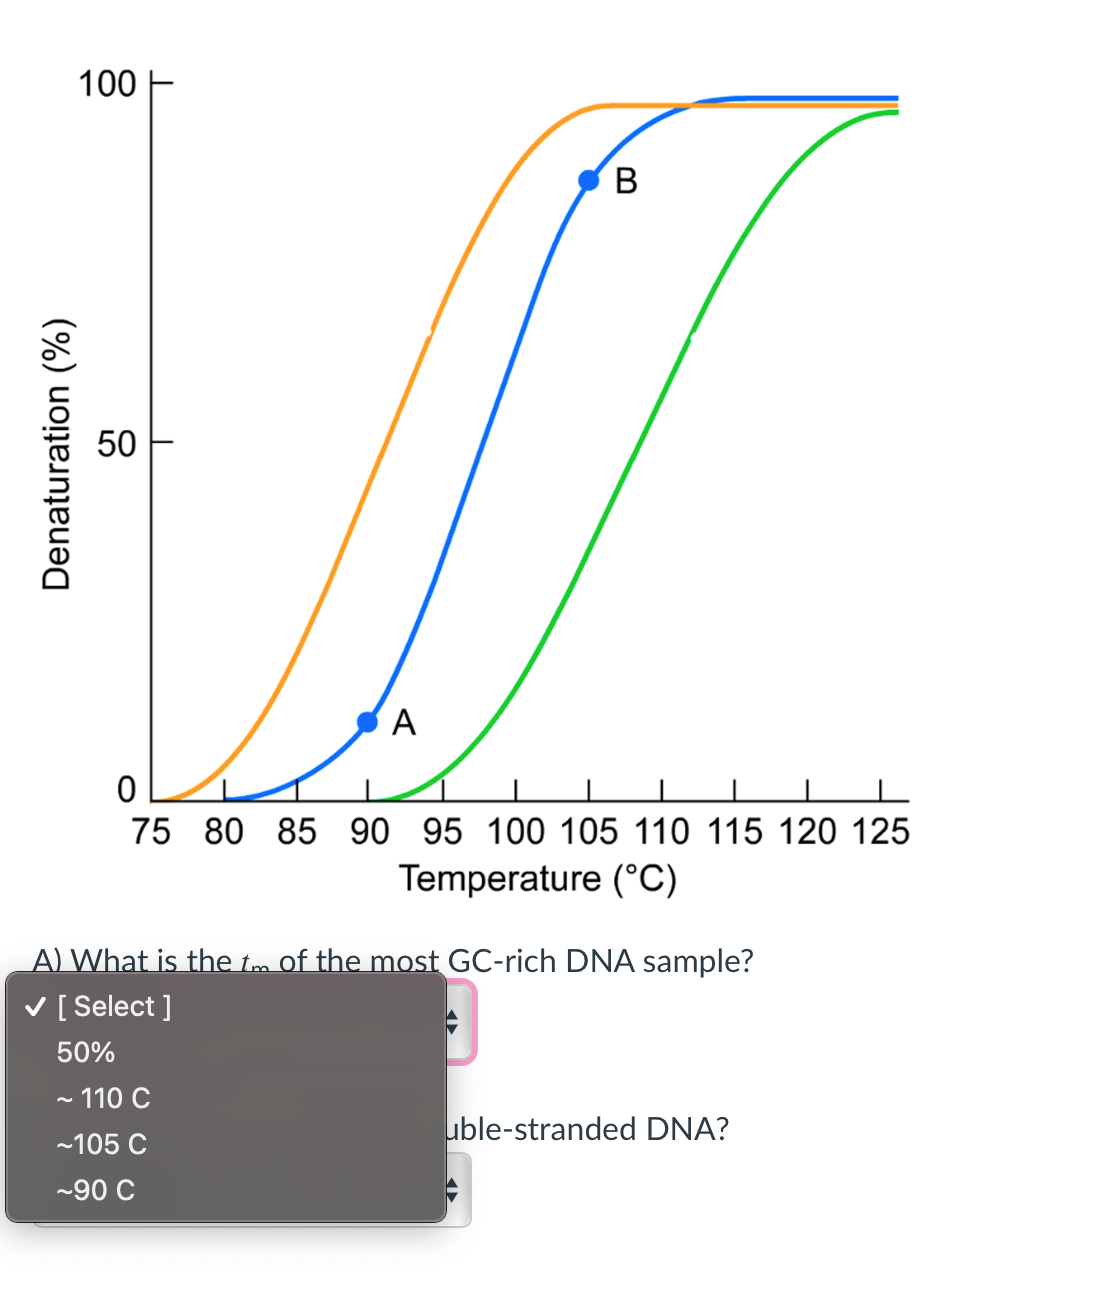 100 E
В
A
75 80 85 90 95 100 105 110 115 120 125
Temperature (°C)
A) What is the tm of the most GC-rich DNA sample?
V [ Select ]
50%
- 110 C
uble-stranded DNA?
-105 C
-90 C
Denaturation (%)
50
